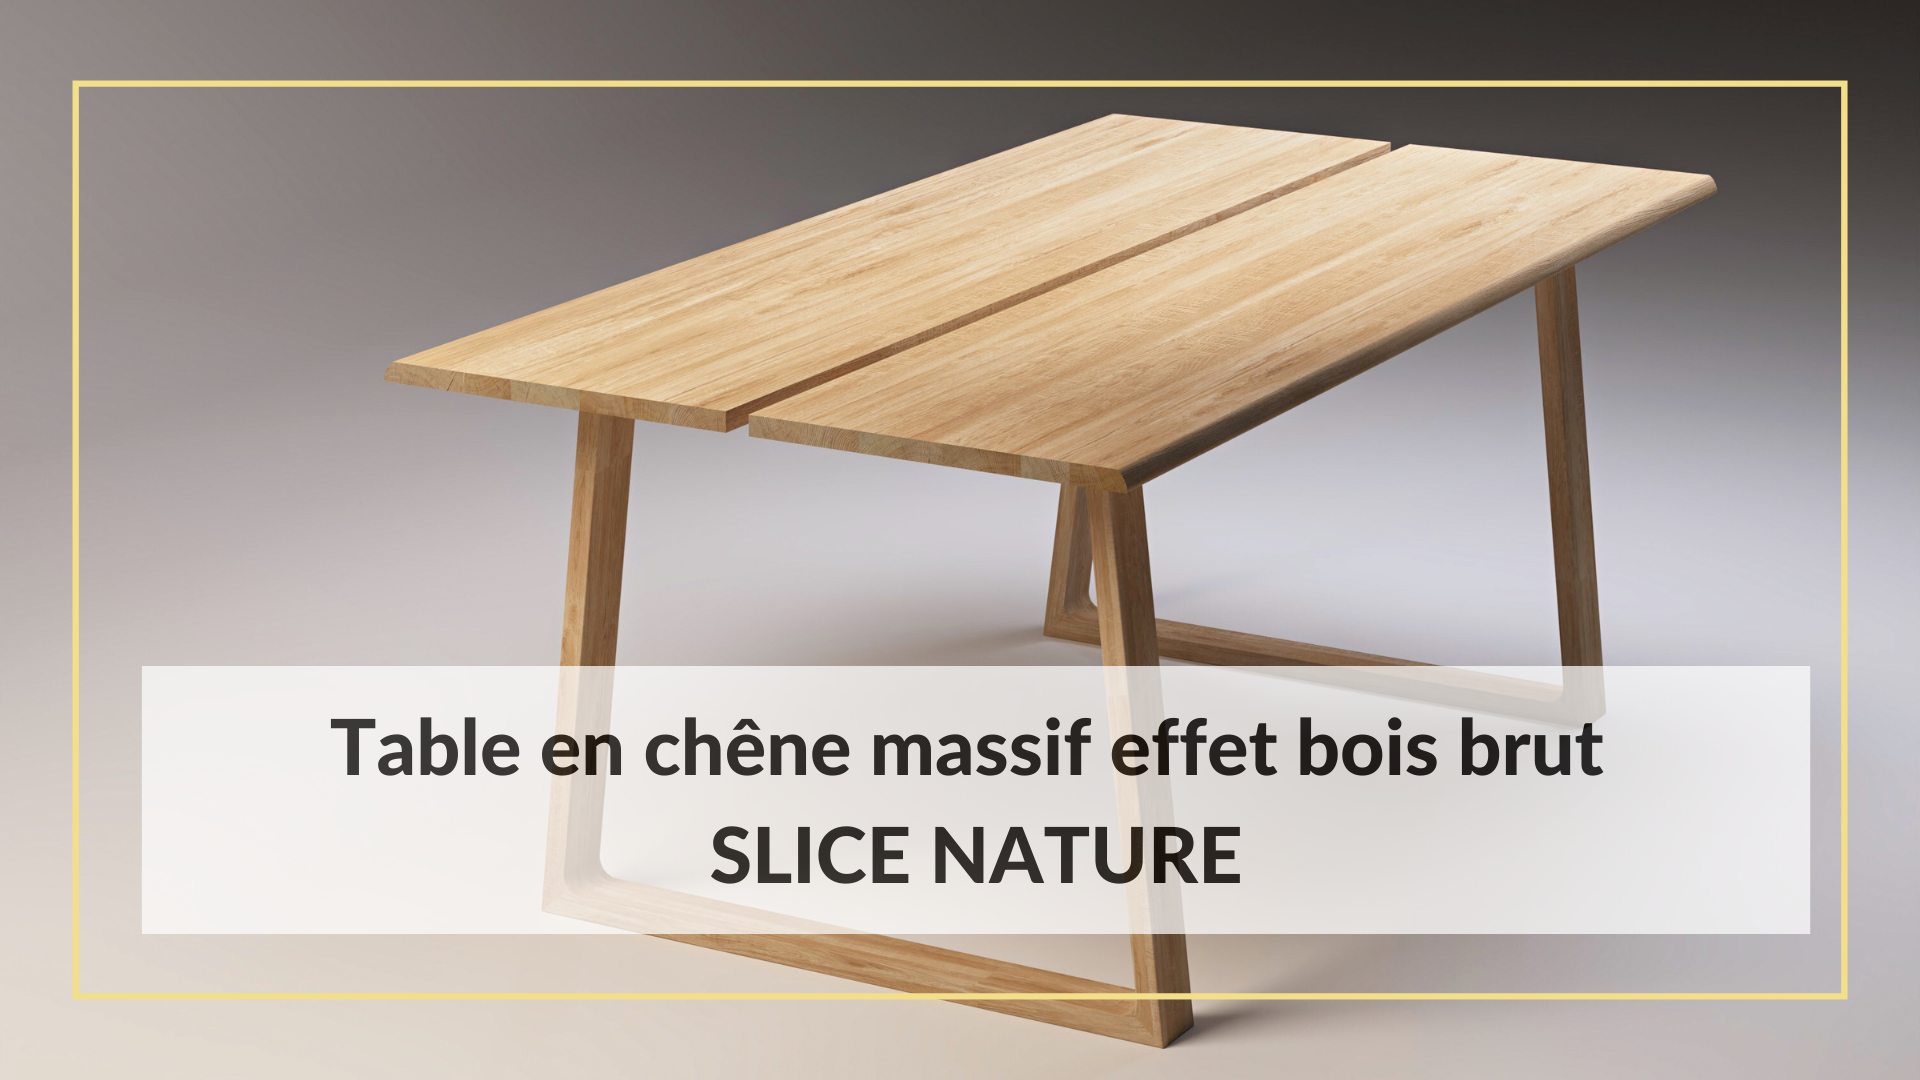 Table en chêne massif effet bois brut SLICE NATURE, inspirée par la nature